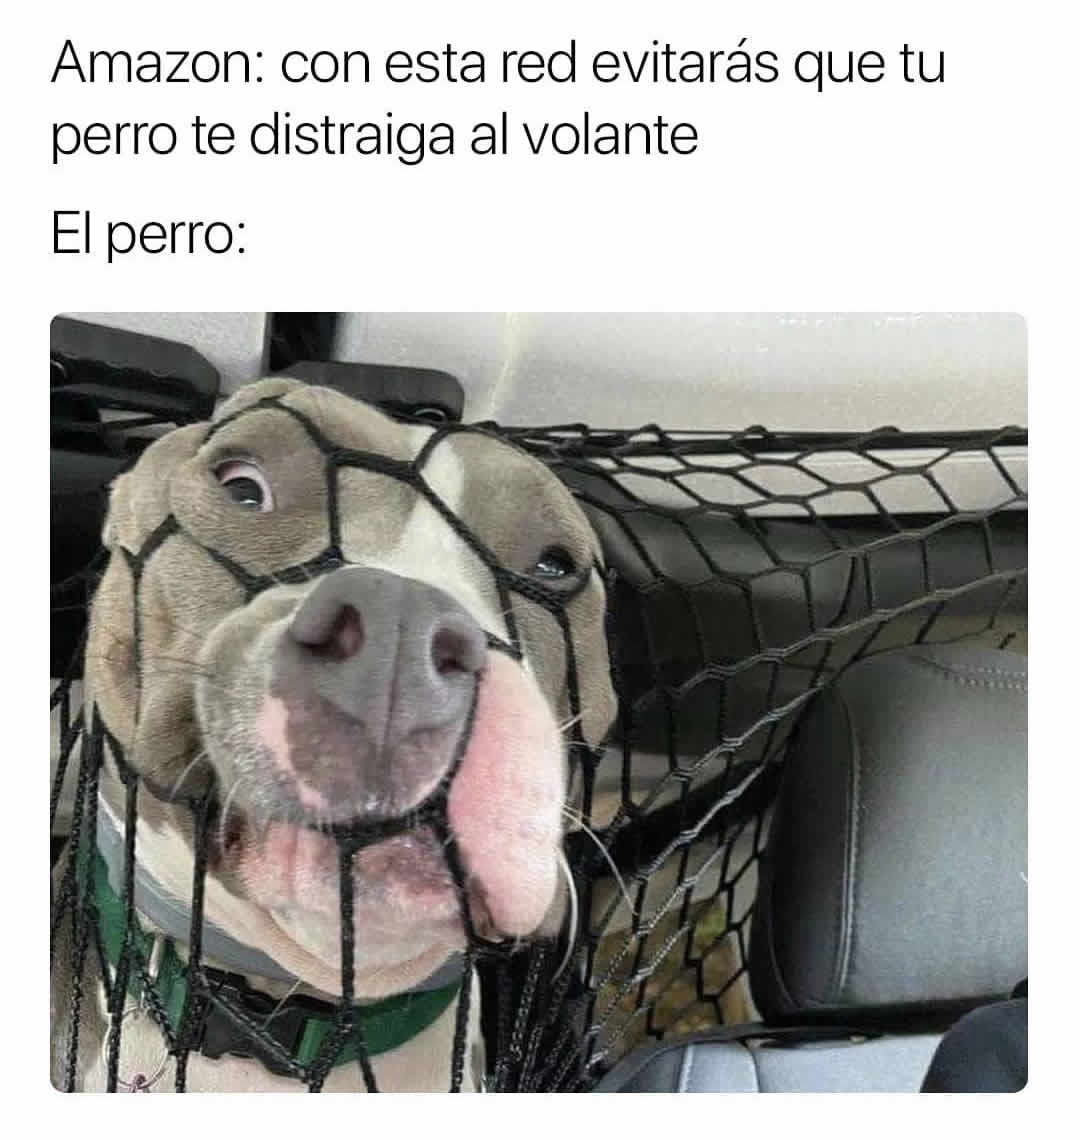 Amazon: Con esta red evitarás que tu perro te distraiga al volante.  El perro: